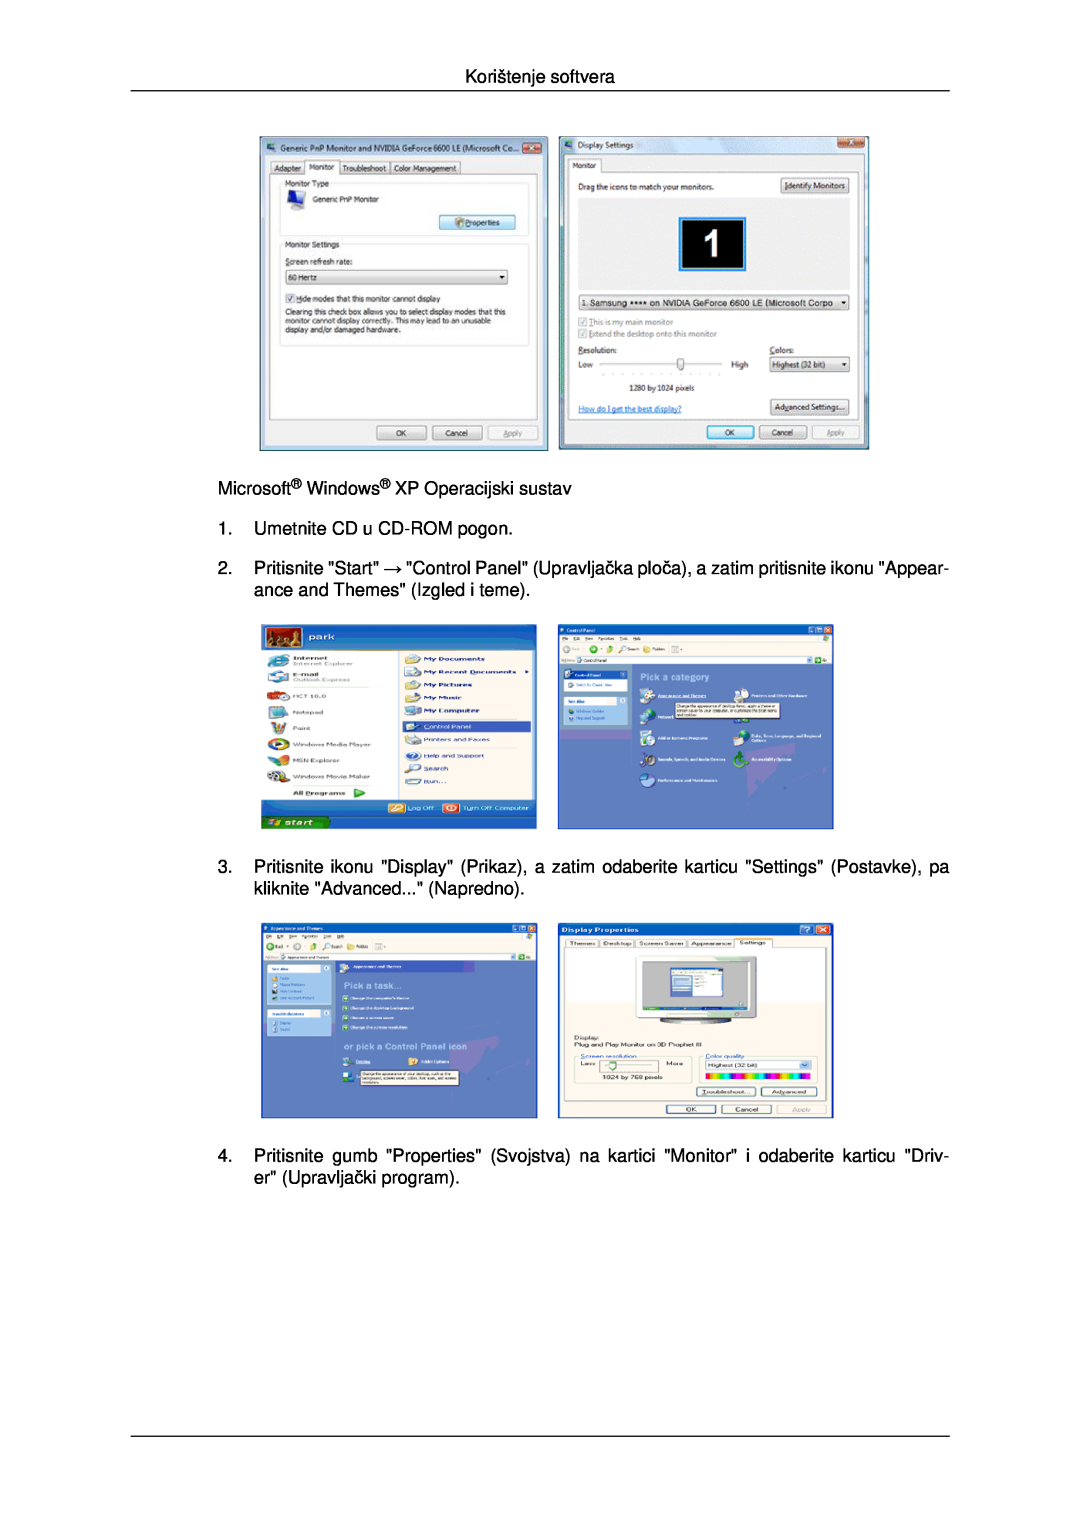 Samsung LH46MRTLBC/EN manual Korištenje softvera, Microsoft Windows XP Operacijski sustav 1. Umetnite CD u CD-ROM pogon 